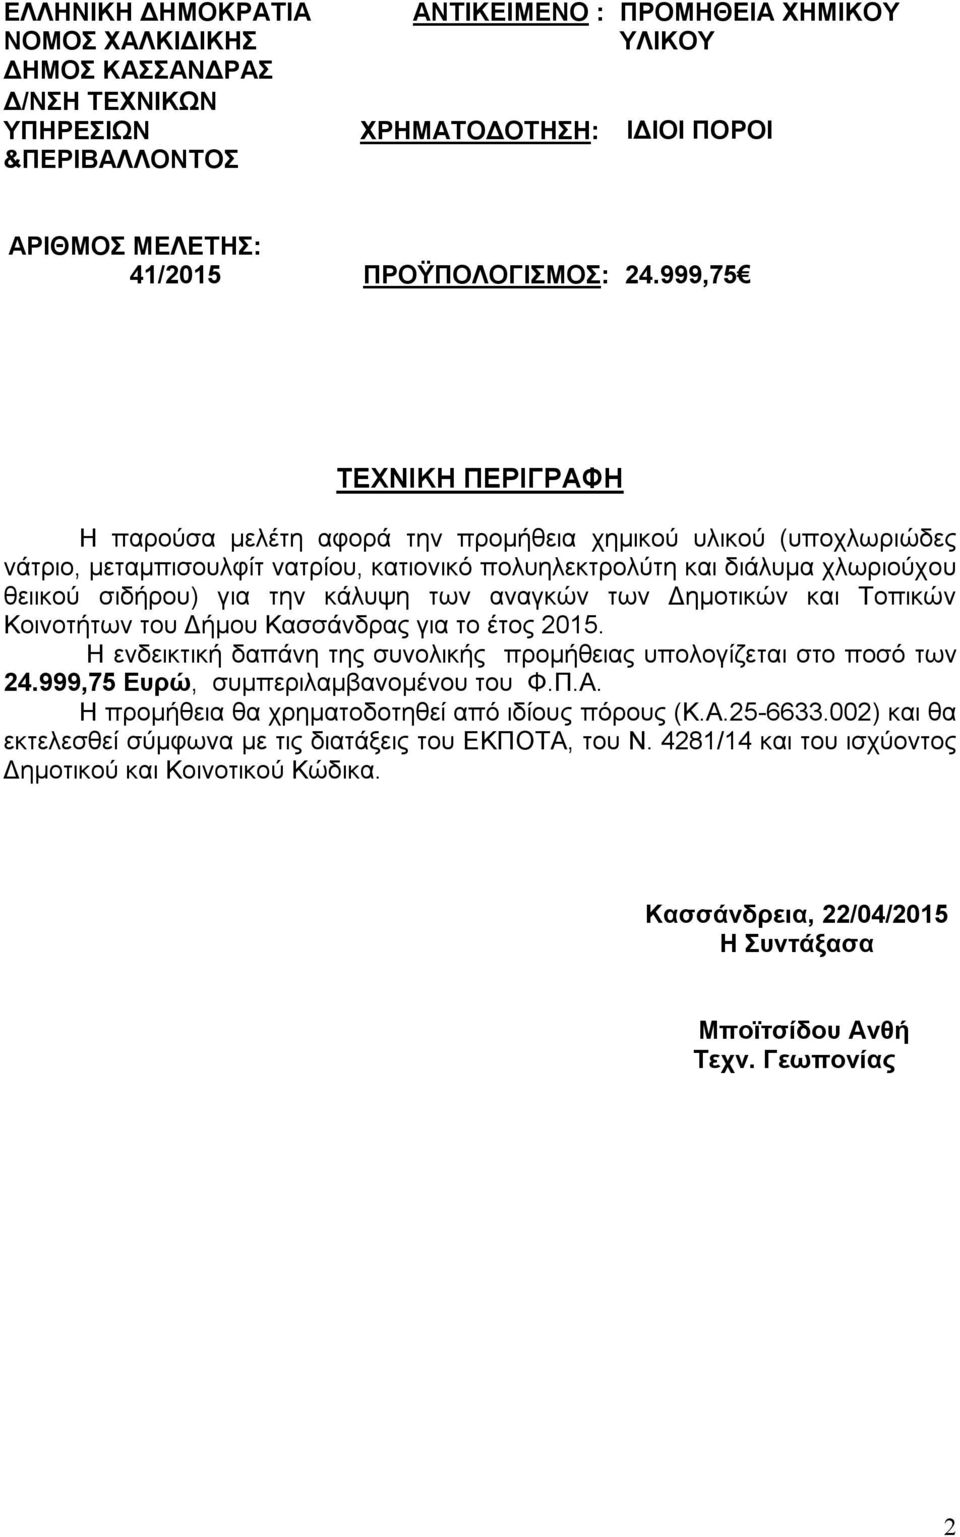 θειικού σιδήρου) για την κάλυψη των αναγκών των Δημοτικών και Τοπικών Κοινοτήτων του Δήμου Κασσάνδρας για το έτος 2015.